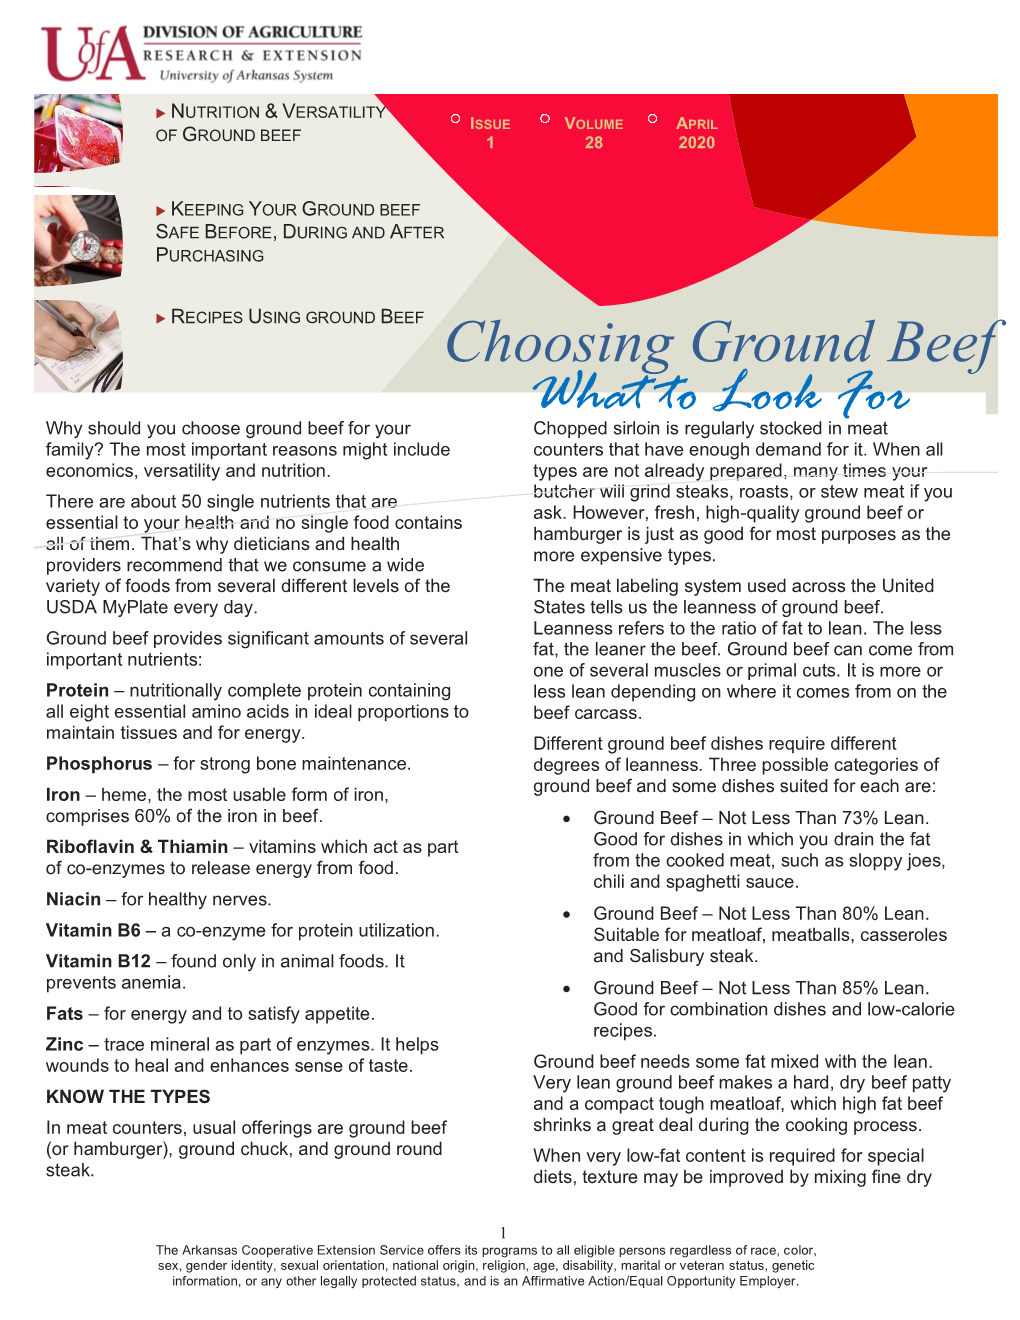 Choosing Ground Beef